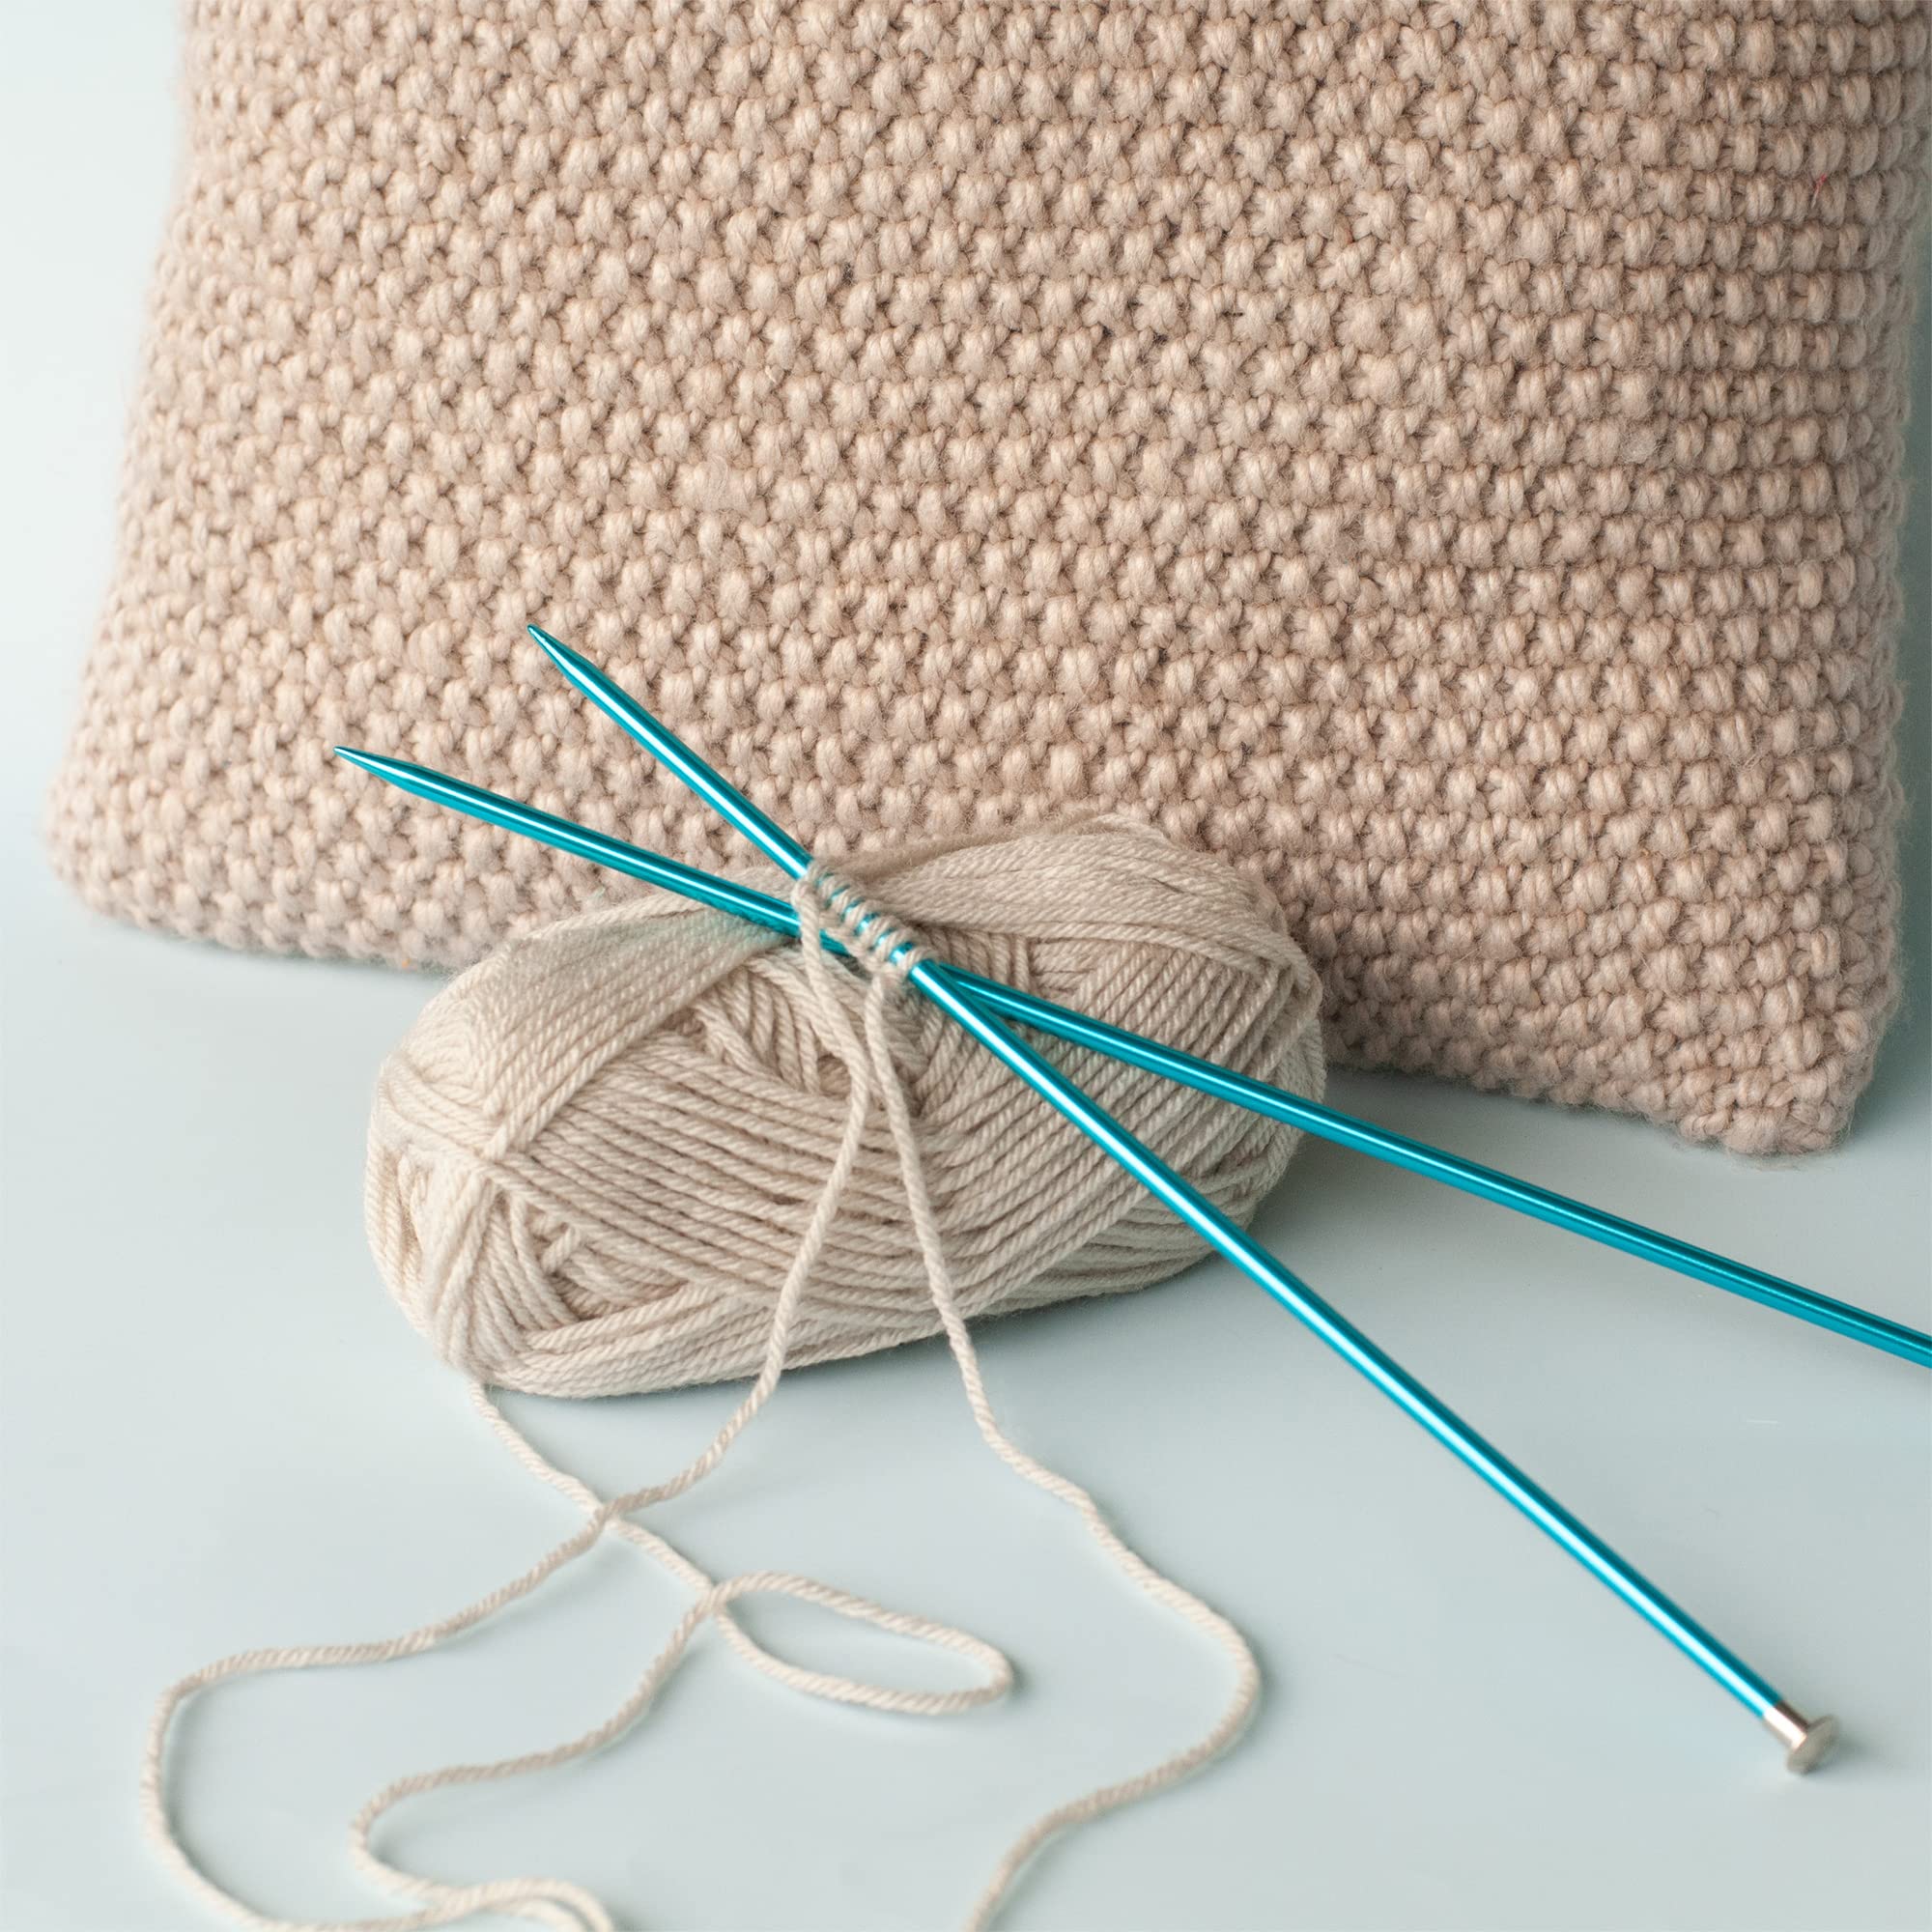 Boye Anodized Aluminum Straight Knitting Needle Set, US Sizes 8, 9, 10, Multicolor